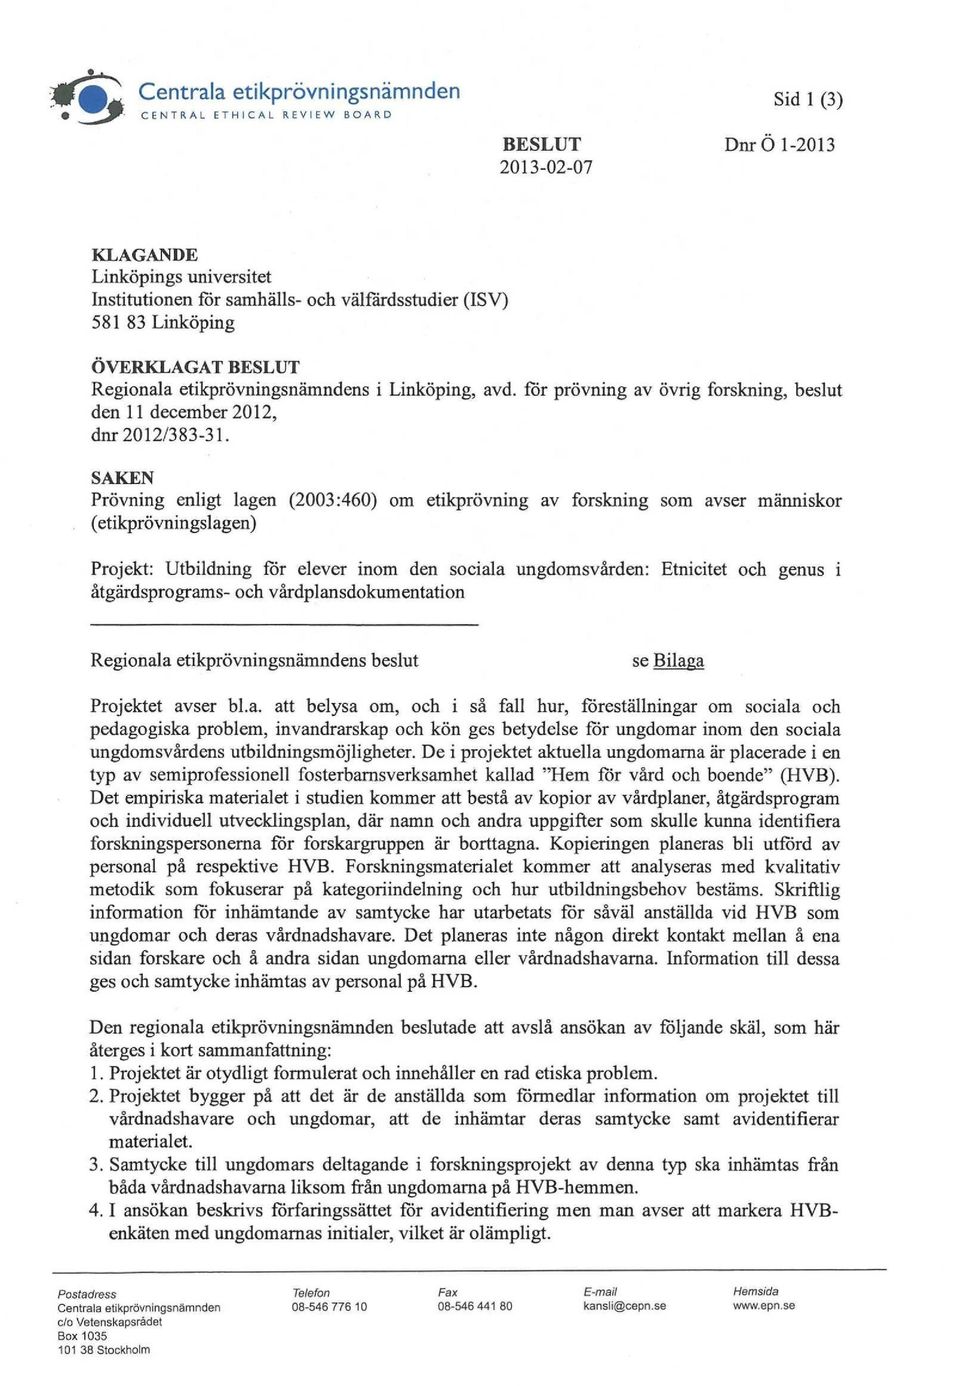 SAKEN Prövning enligt lagen (2003:460) om etikprövning av forskning som avser människor (etikprövningslagen) Projekt: Utbildning för elever inom den sociala ungdomsvården: Etnicitet och genus i